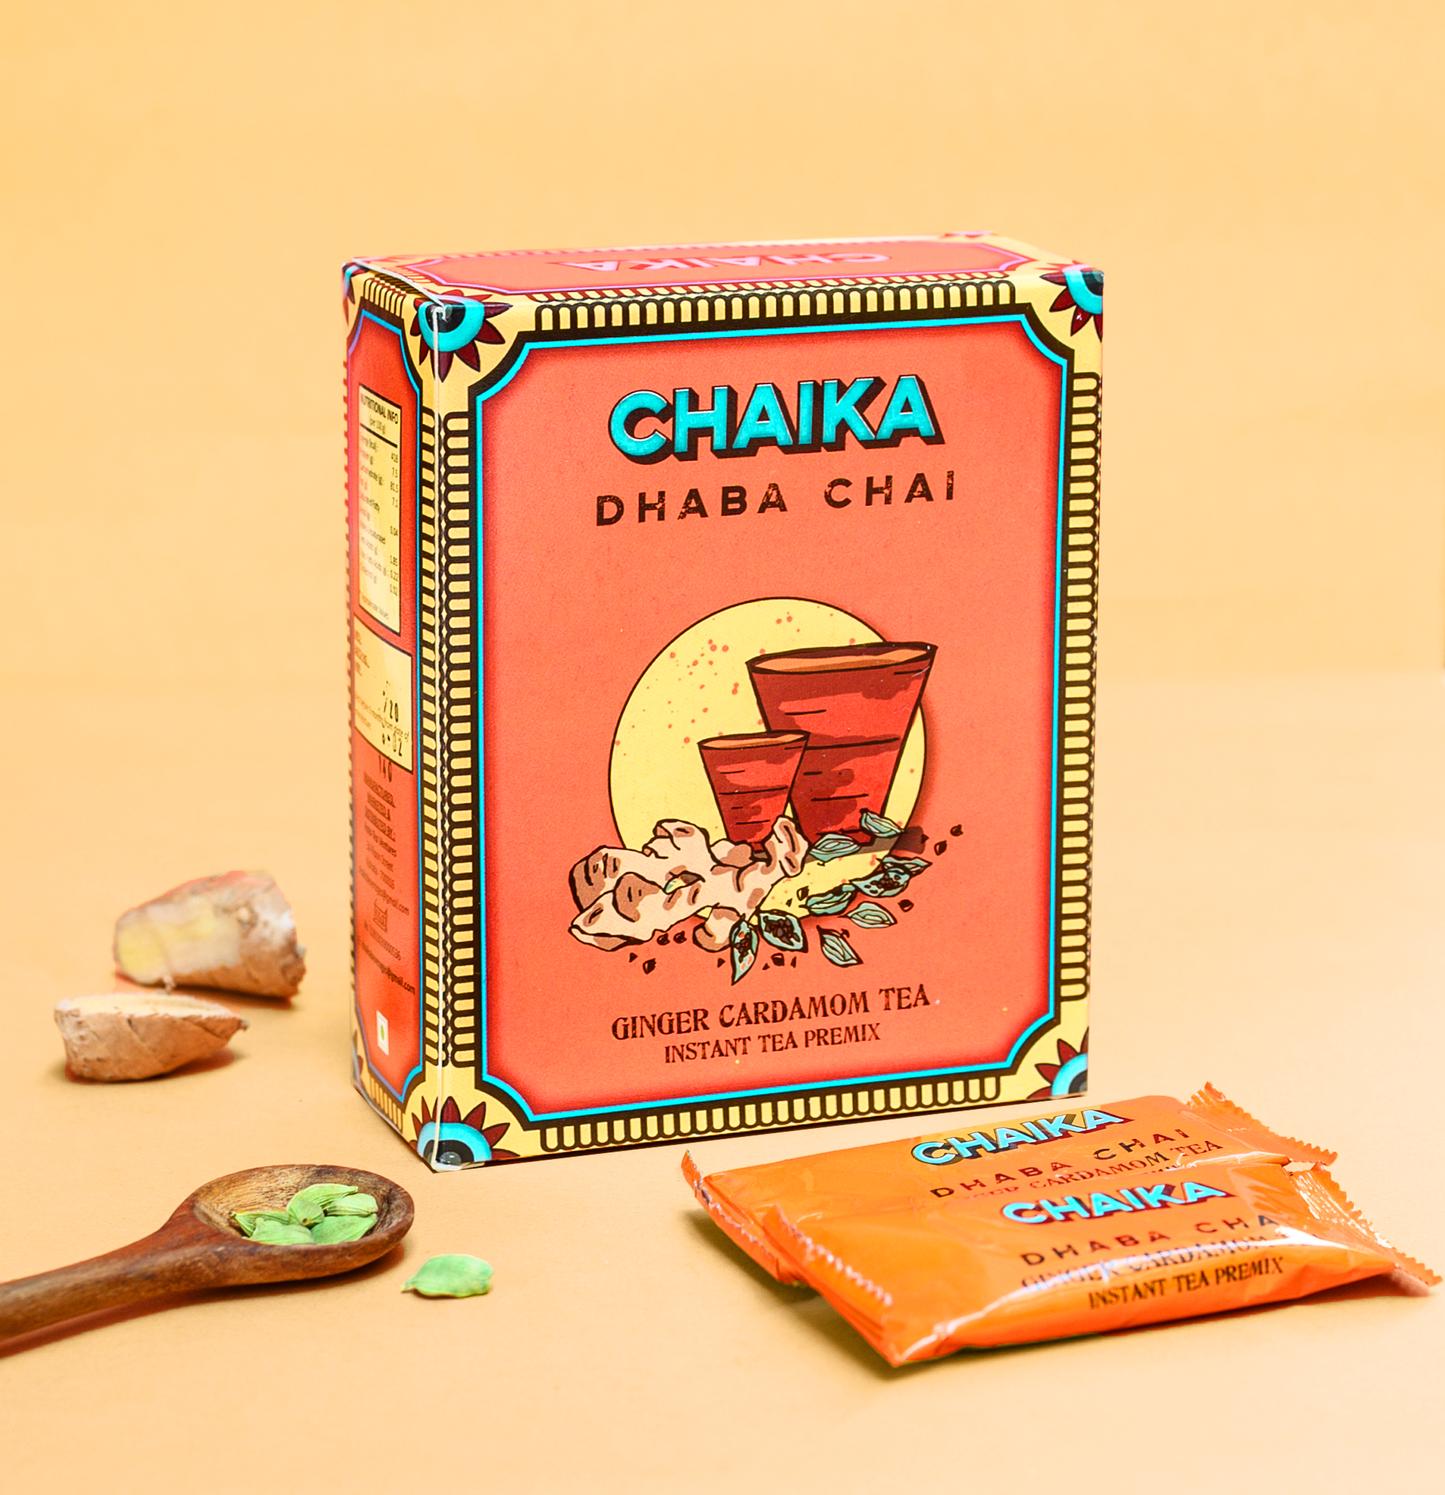 Chaika's Dhaba Chai